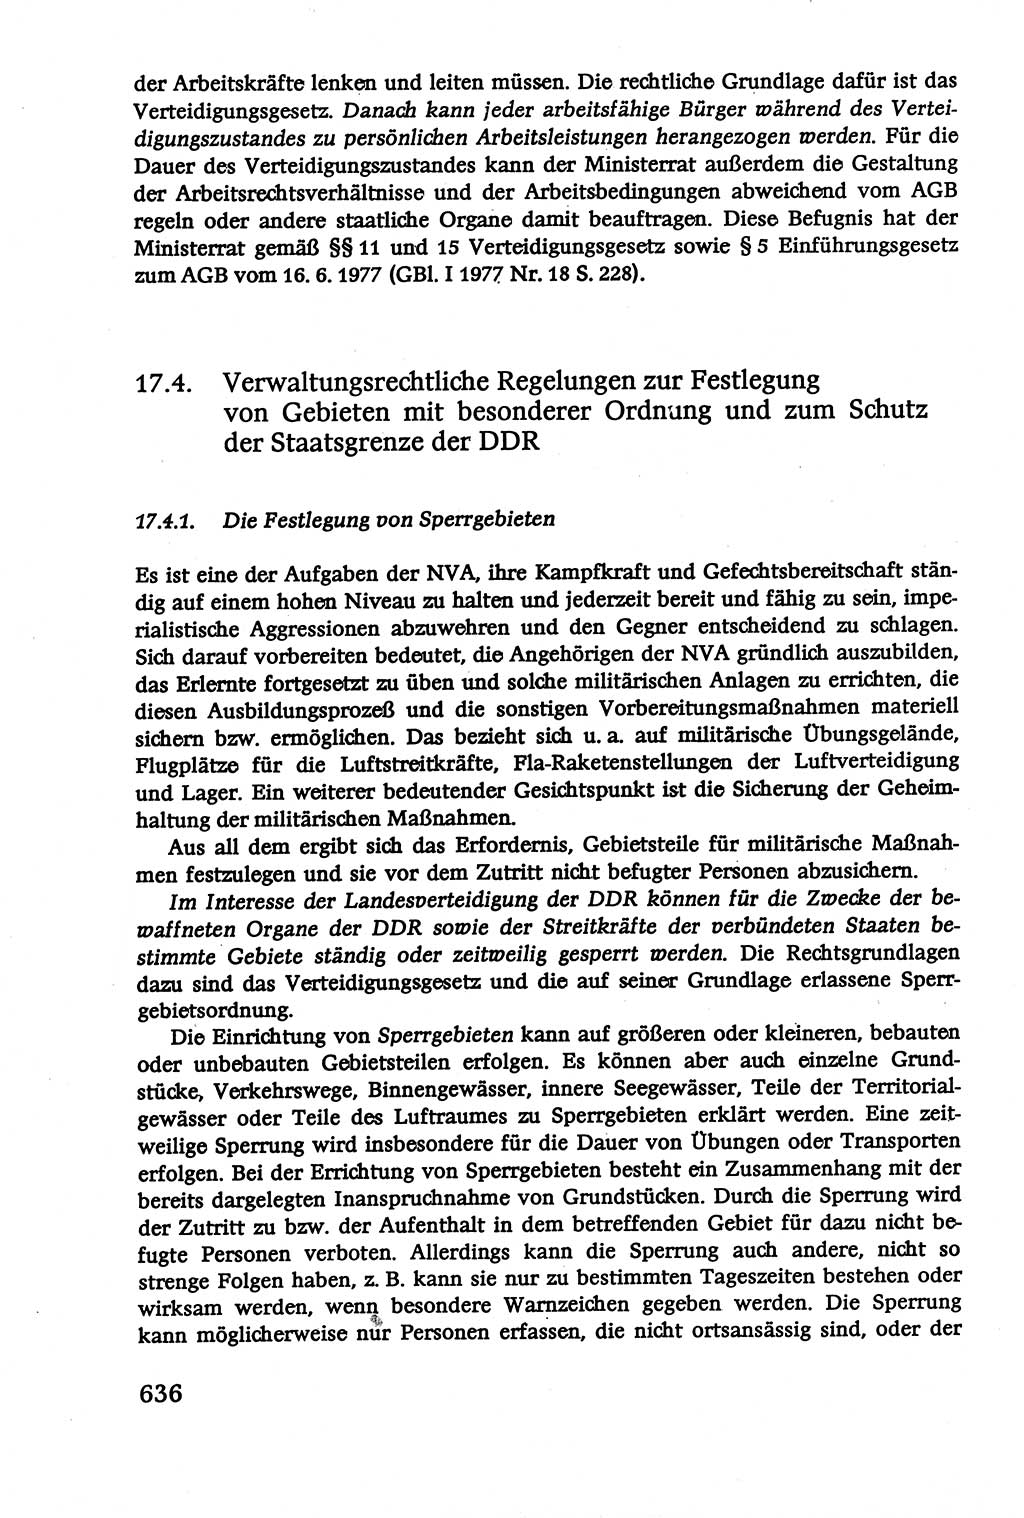 Verwaltungsrecht [Deutsche Demokratische Republik (DDR)], Lehrbuch 1979, Seite 636 (Verw.-R. DDR Lb. 1979, S. 636)